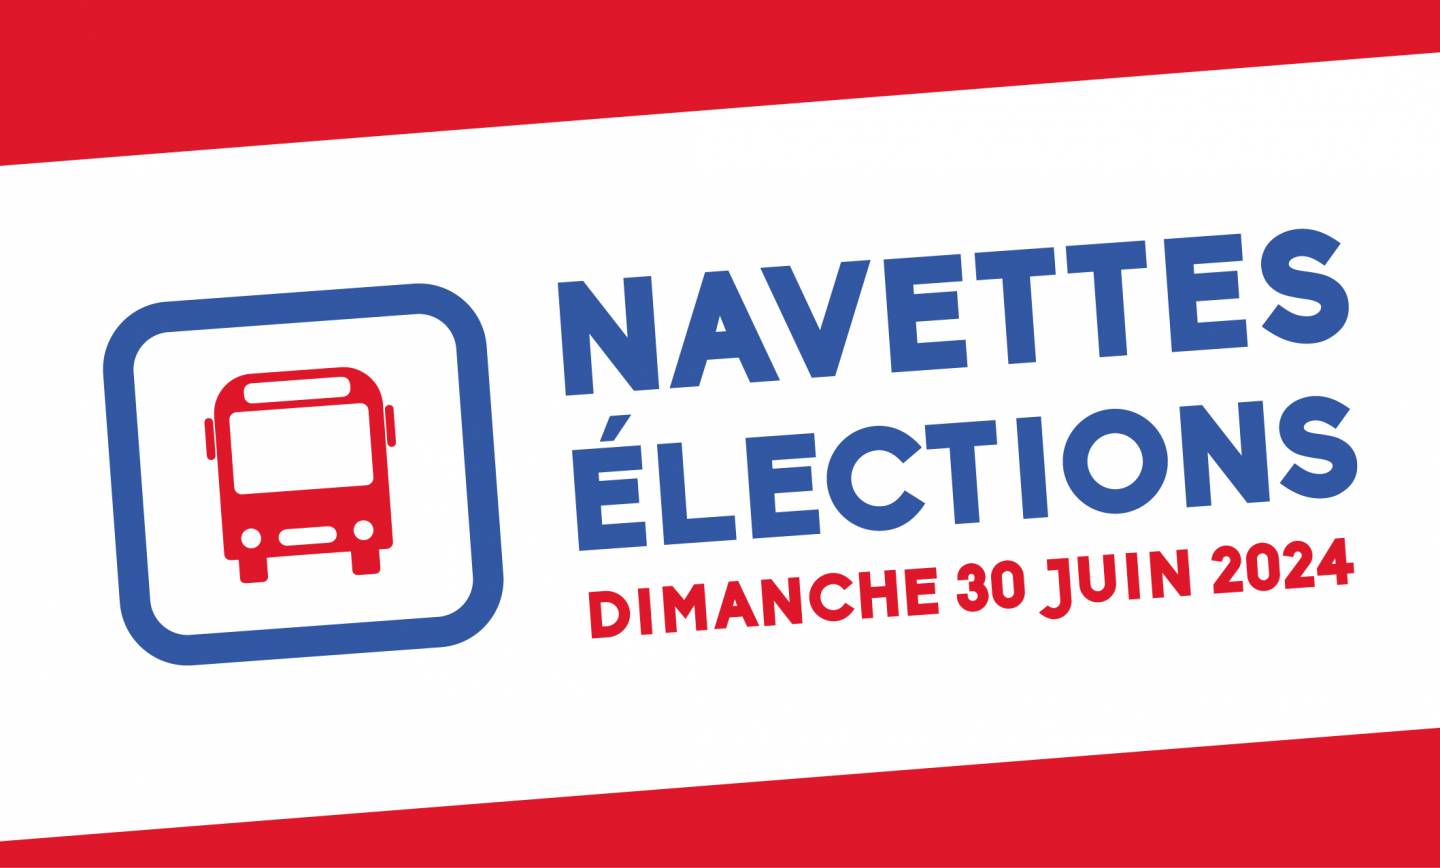 NAVETTE élections dimanche 30 juin